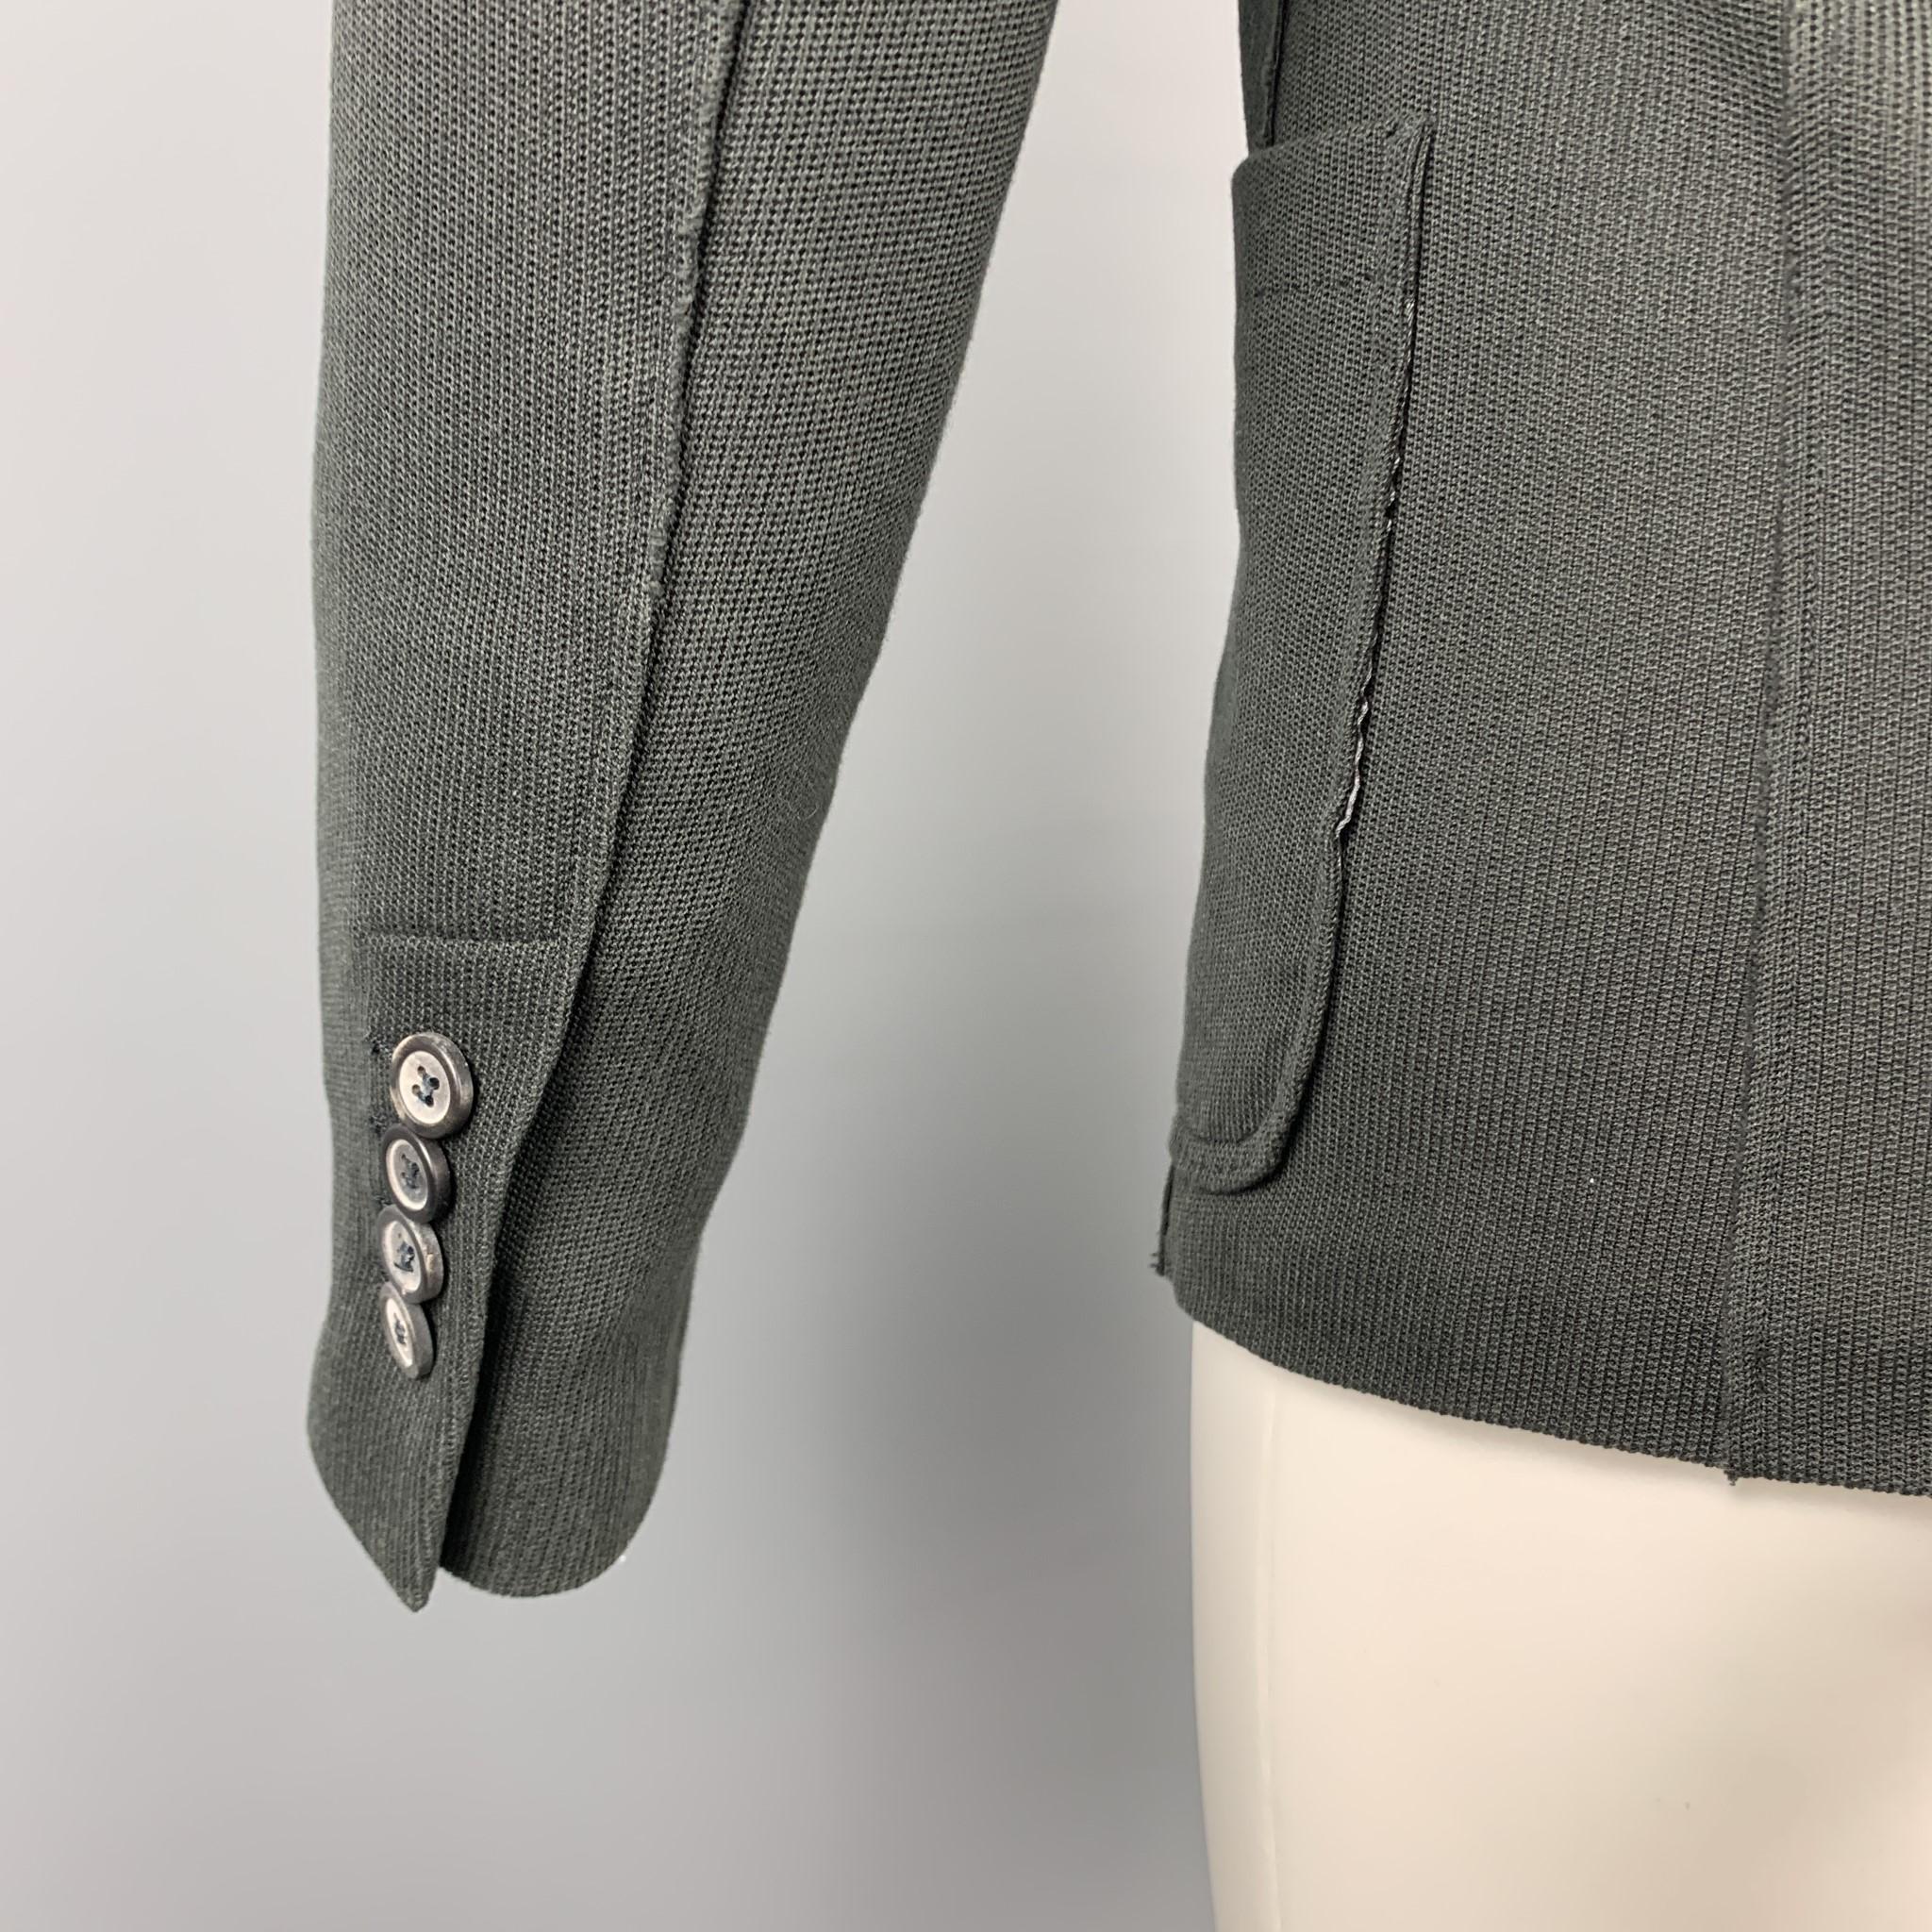 Men's LANVIN Size 38 Charcoal Woven Cotton Notch Lapel Sport Coat Jacket